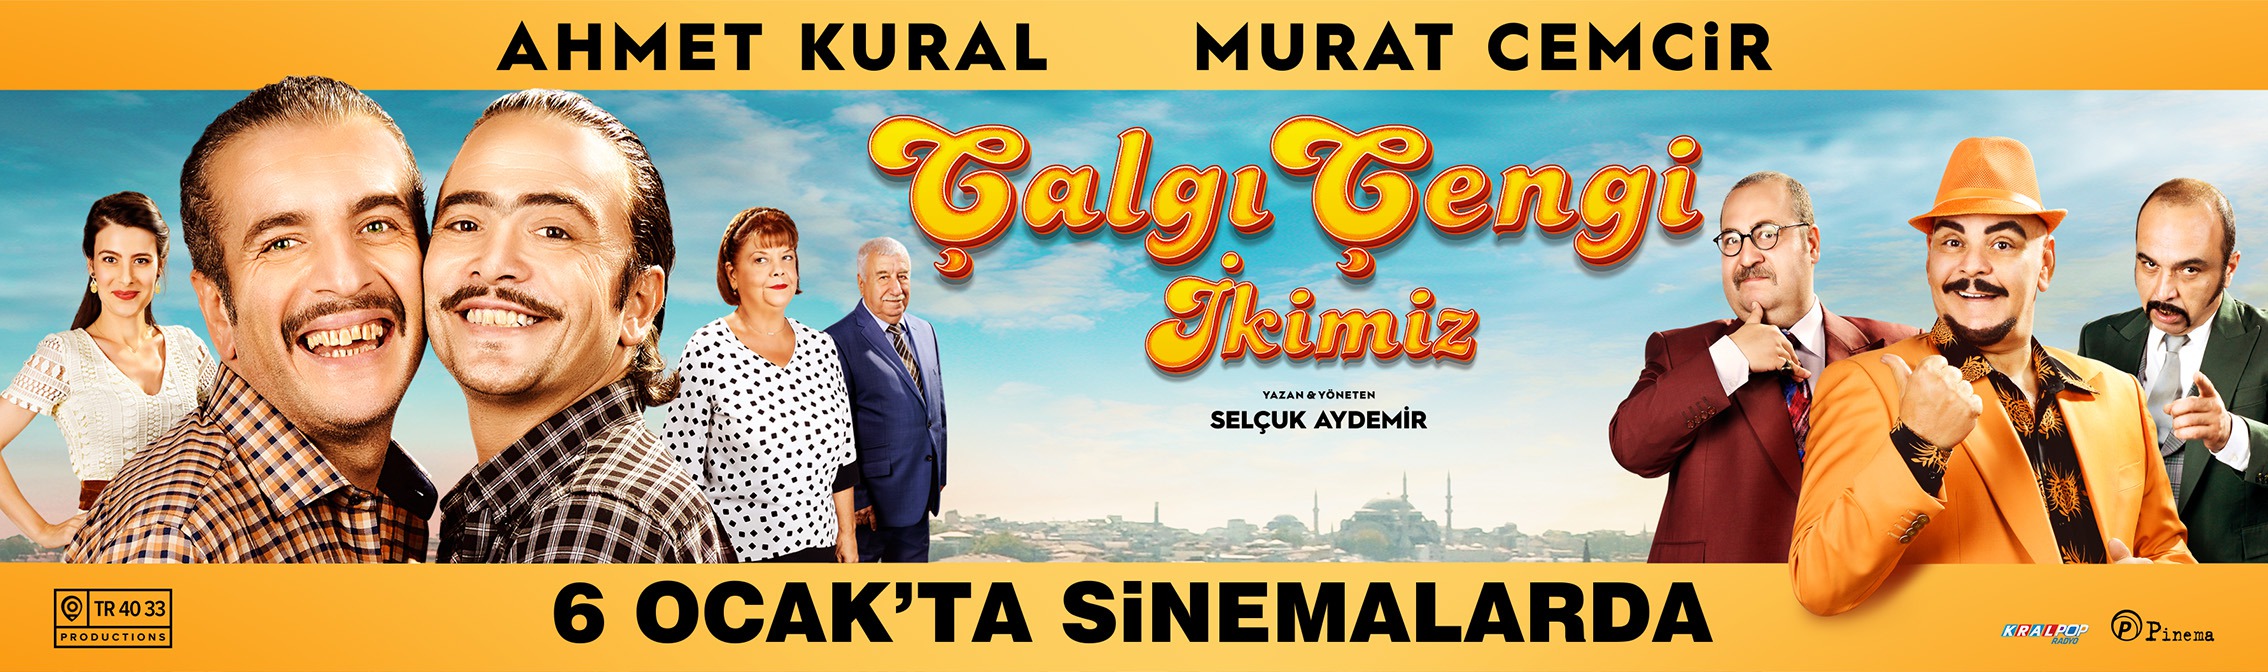 Mega Sized Movie Poster Image for Çalgi Çengi Ikimiz (#13 of 14)